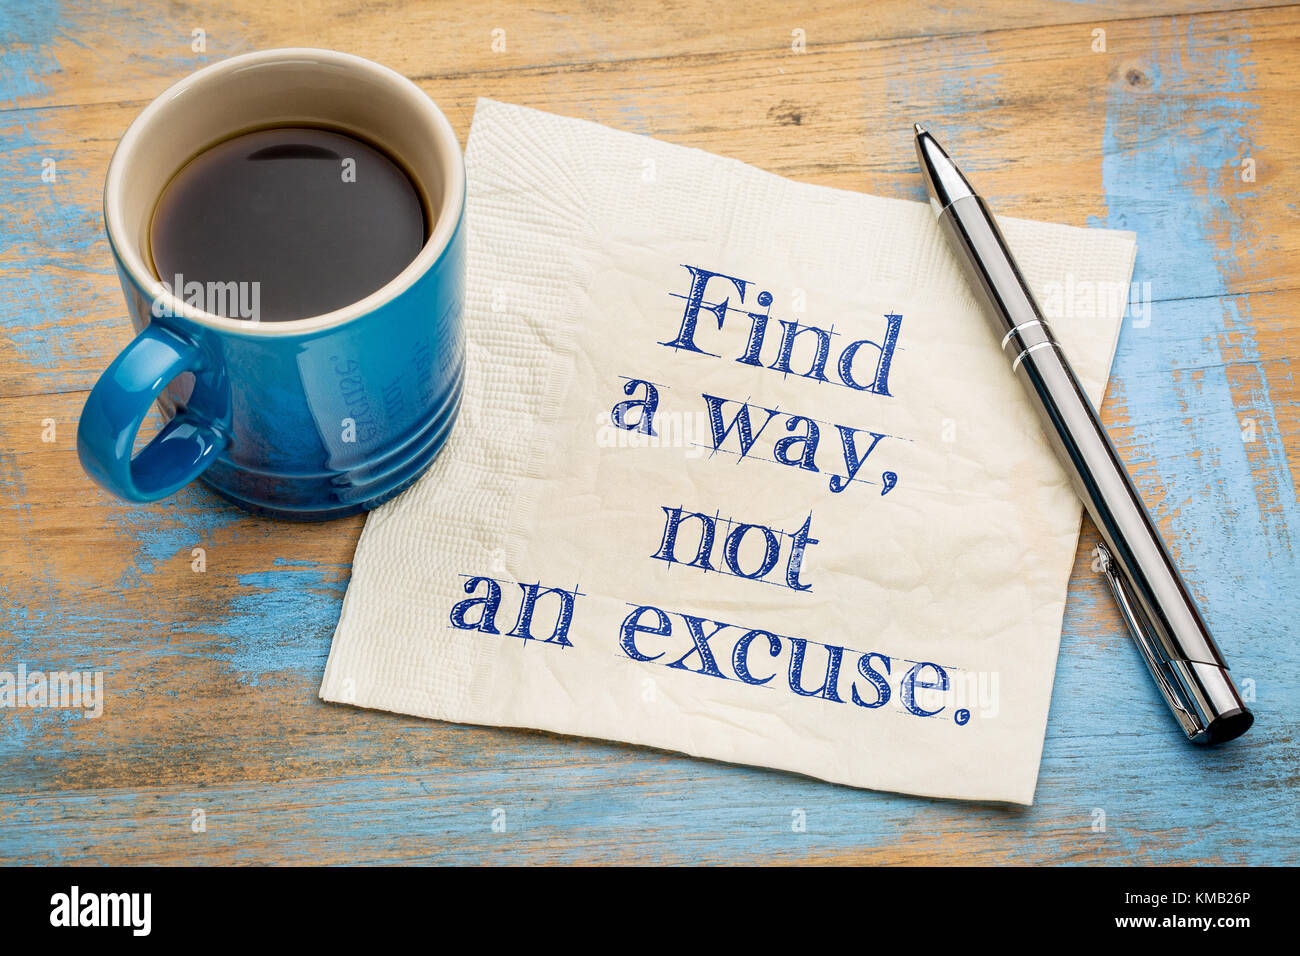 Encontrar un camino, no una excusa - inspirador de la escritura a mano en una servilleta con una taza de café espresso Foto de stock